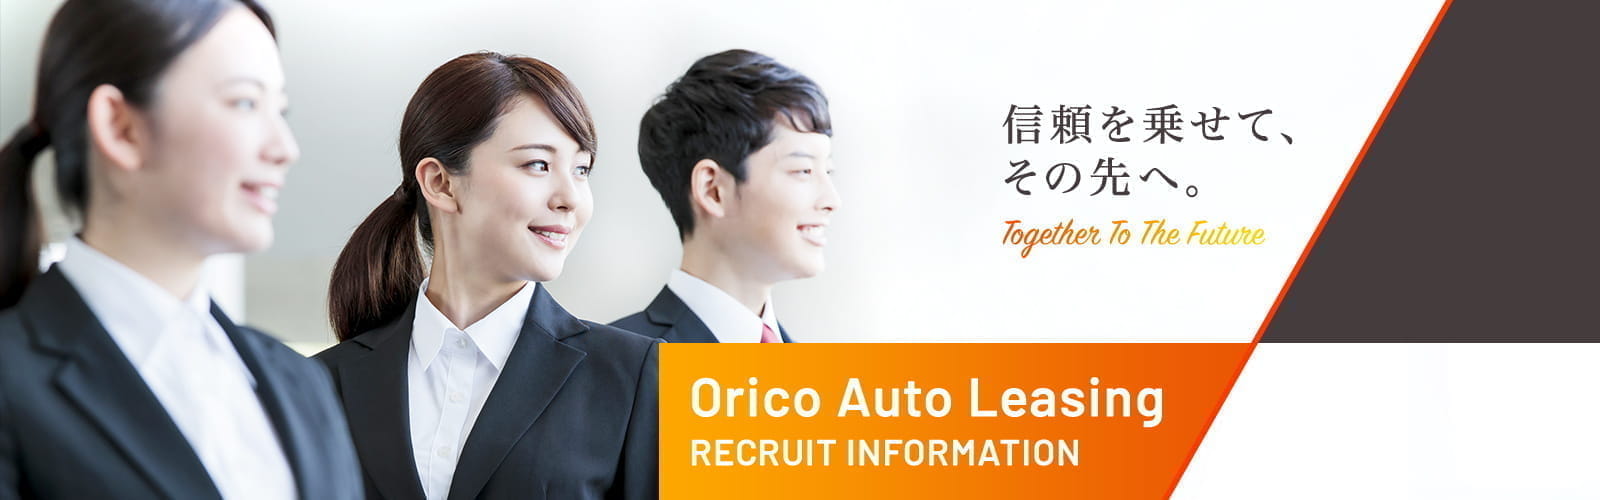 信頼を乗せて、その先へ。Orico Auto Leasing RECRUIT INFORMATION